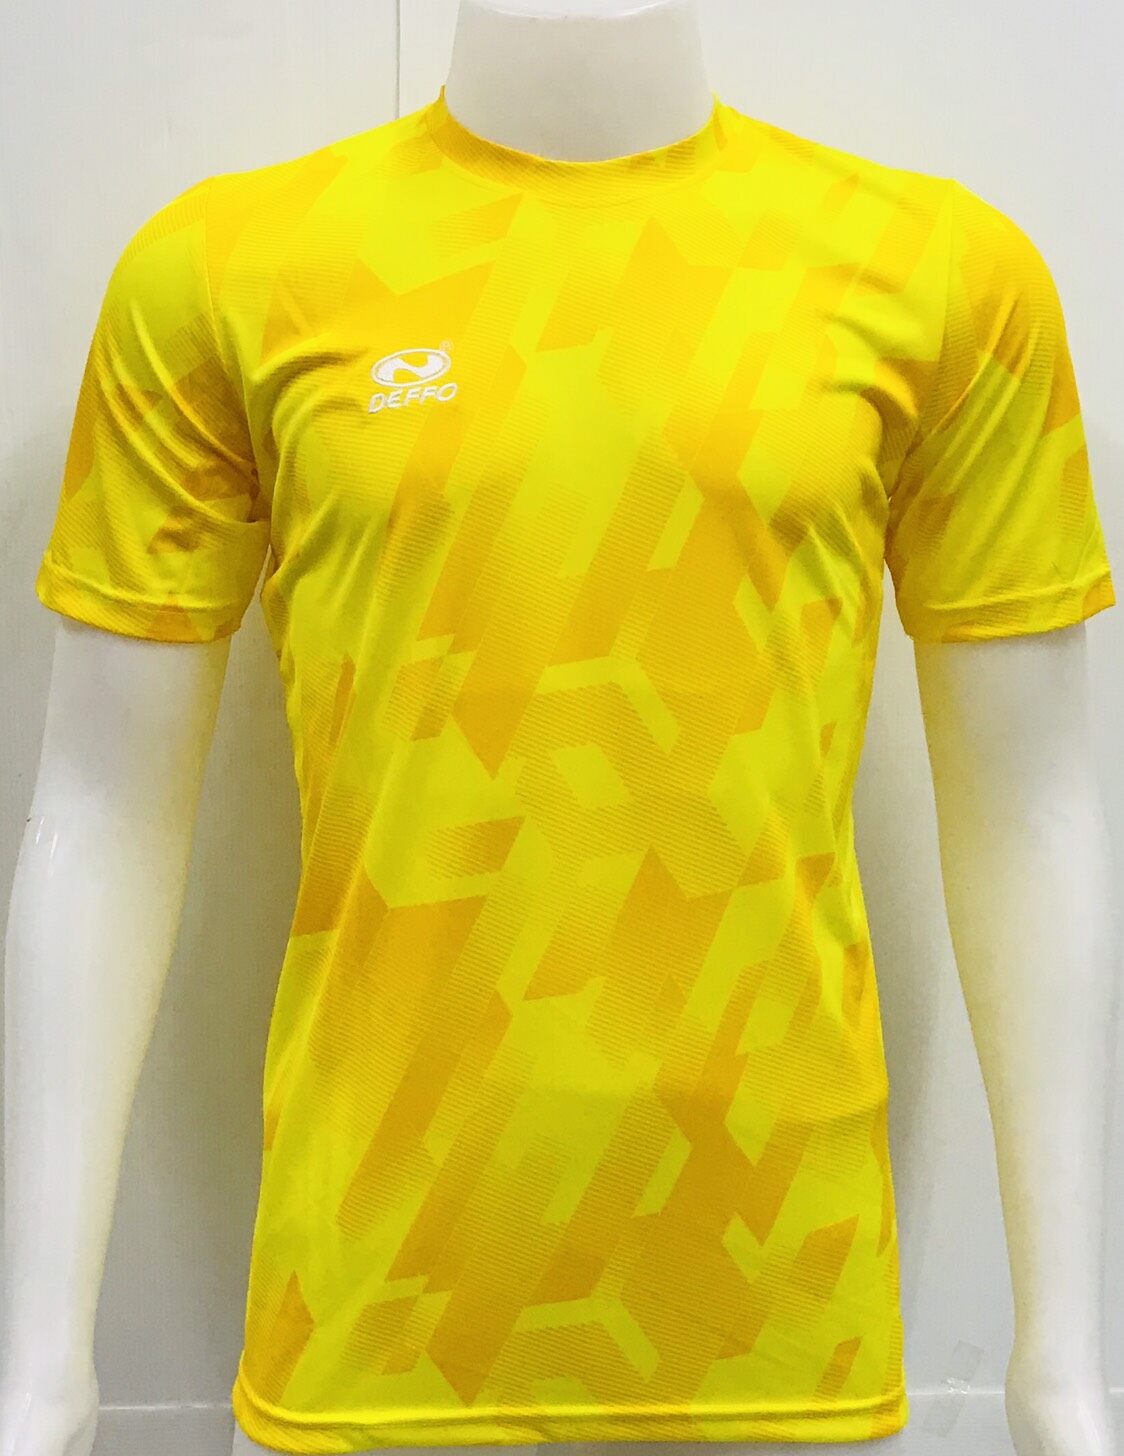 Deffo Sport เสื้อกีฬาผ้าพิมพ์ลาย เดฟโฟ ของแท้ (สีเหลือง)